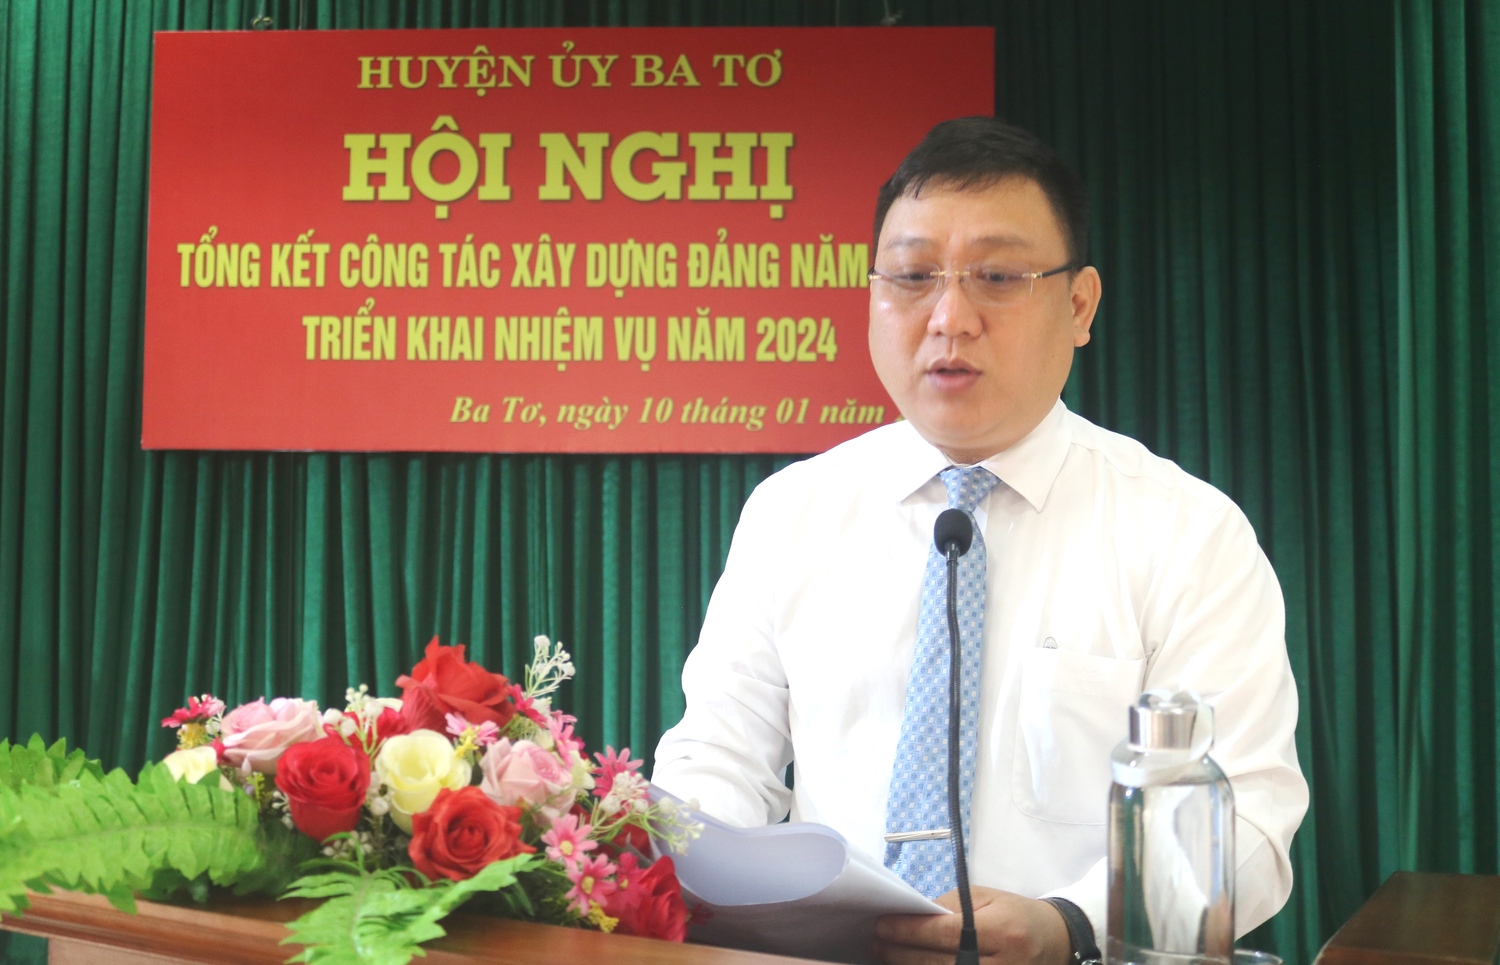 Huyện ủy Ba Tơ tổ chức hội nghị tổng kết công tác xây dựng Đảng năm 2023, triển khai nhiệm vụ năm 2024